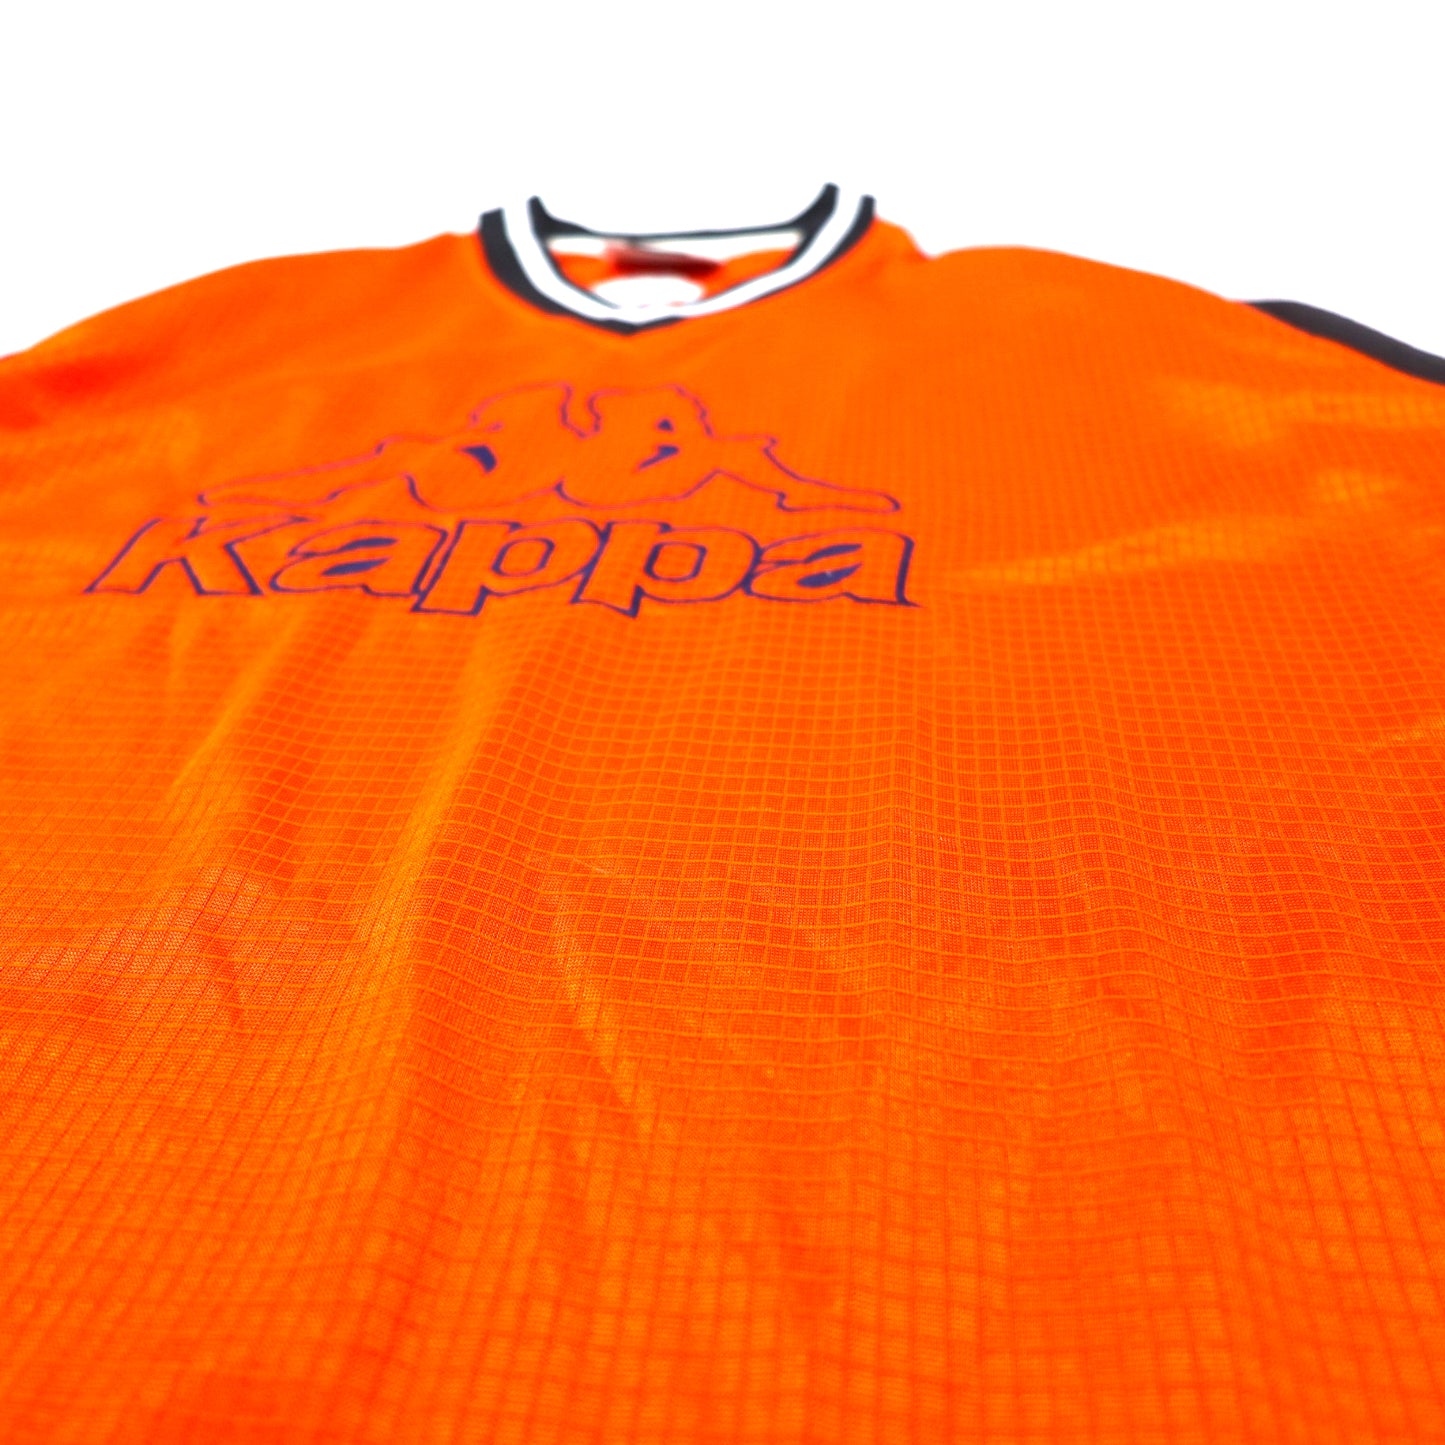 Kappa 90年代 半袖 ゲームシャツ セットアップ XL オレンジ ポリエステル ビッグロゴ刺繍